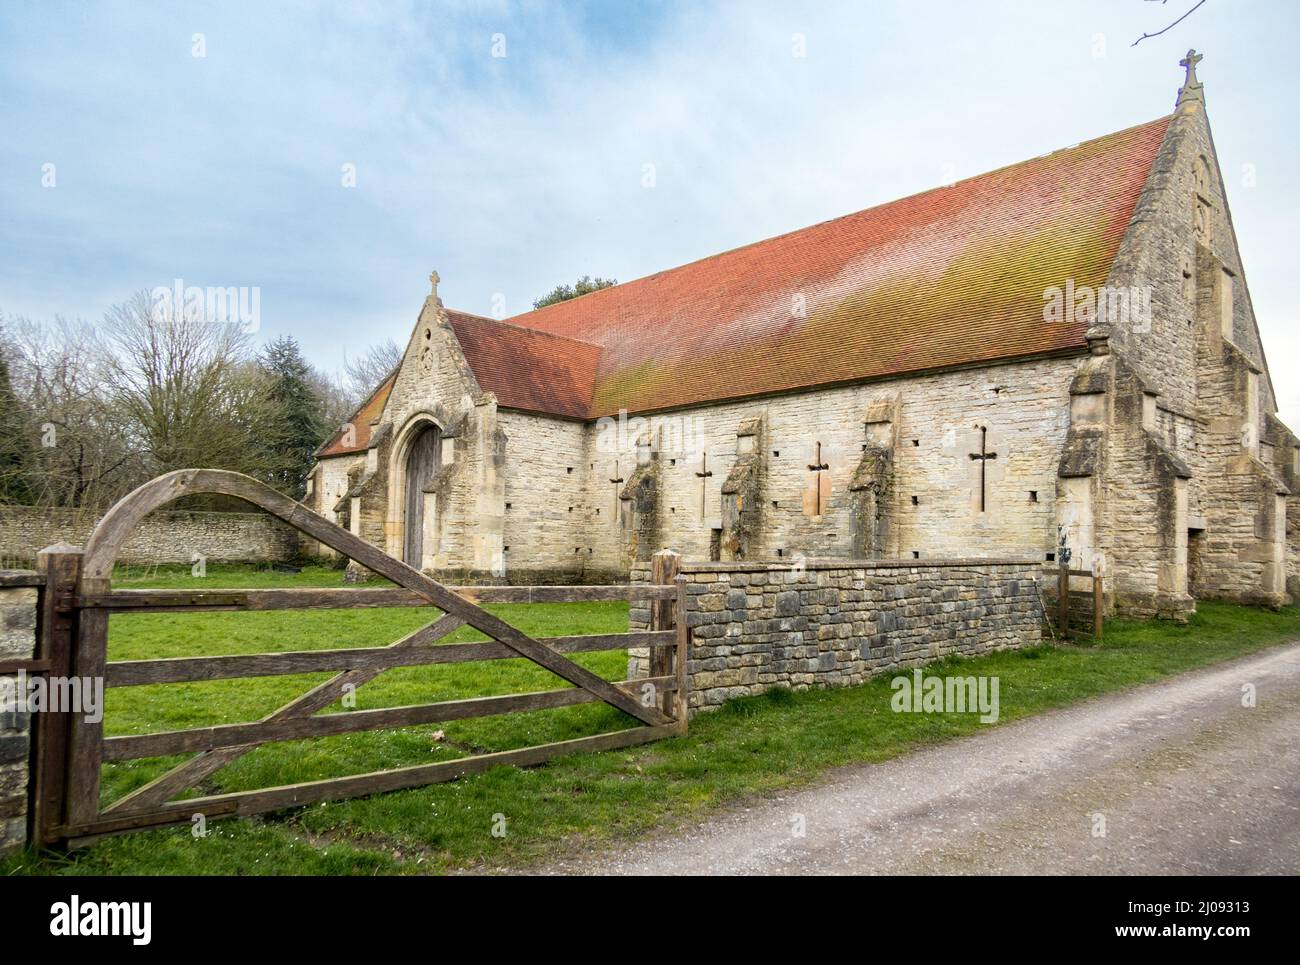 Regno Unito, Inghilterra, Somerset, villaggio di Pilton. 12th secolo Tithe Barn restaurato da Michael Evis di Worthy Farm & Glastonbury Festival. Foto Stock